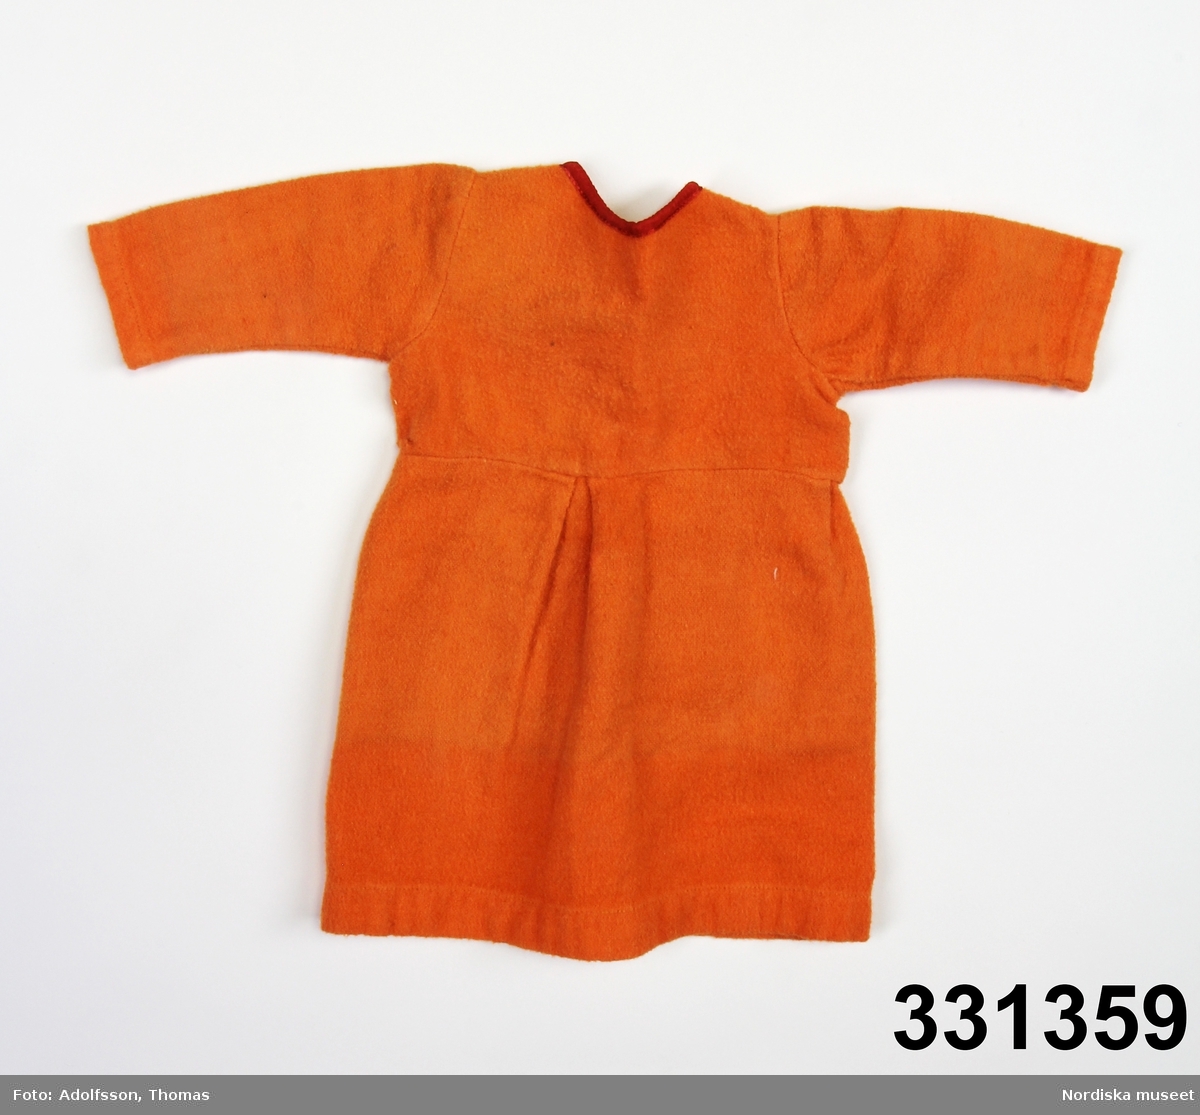 Orange dockklänning med röd halslinning. Två tryckknappar i ryggen.
/Karin Dern 2011-09-13